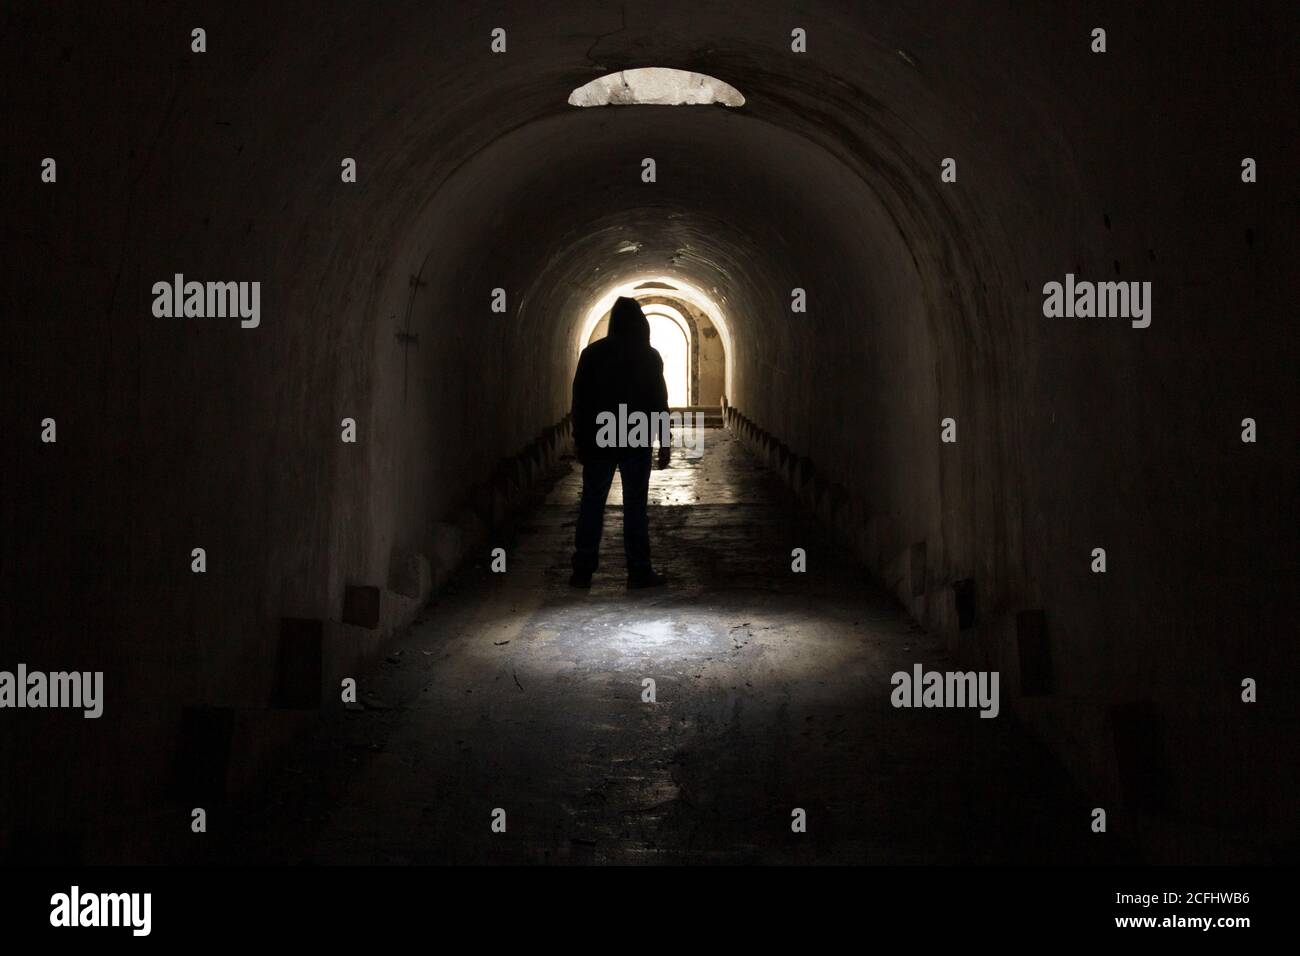 Un uomo in abiti scuri con un cappuccio che va all'uscita della luce da un tunnel sotterraneo buio e cupo, illuminato da luce solare da un portello nel soffitto Foto Stock